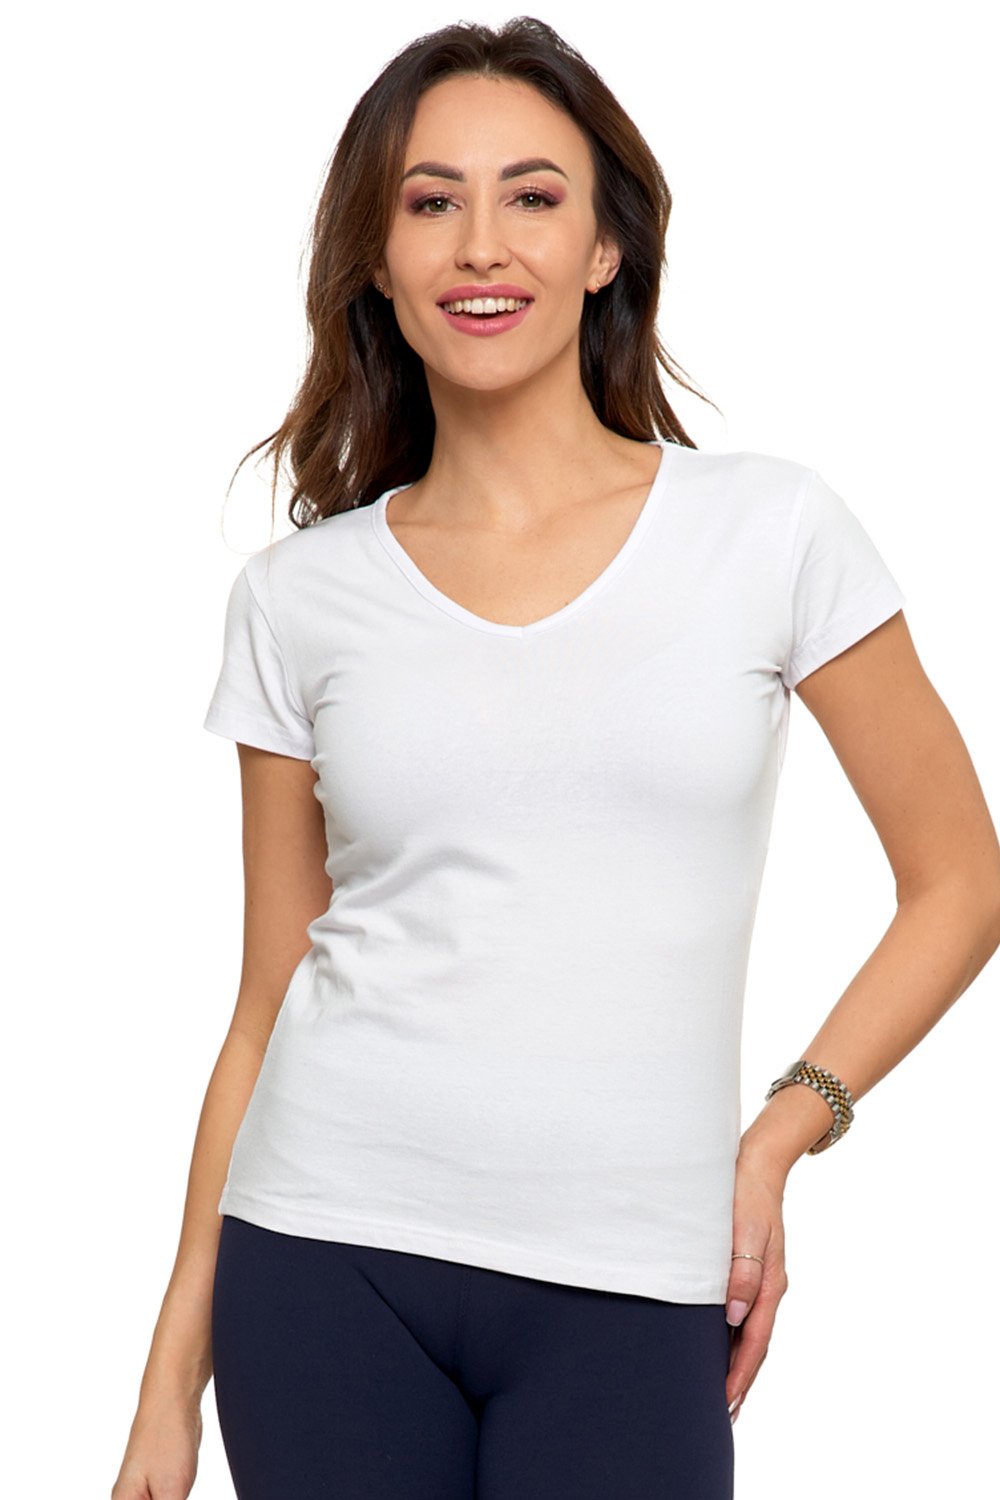 Bavlněné tričko Moraj BD900 - krátký rukáv Bílá XL